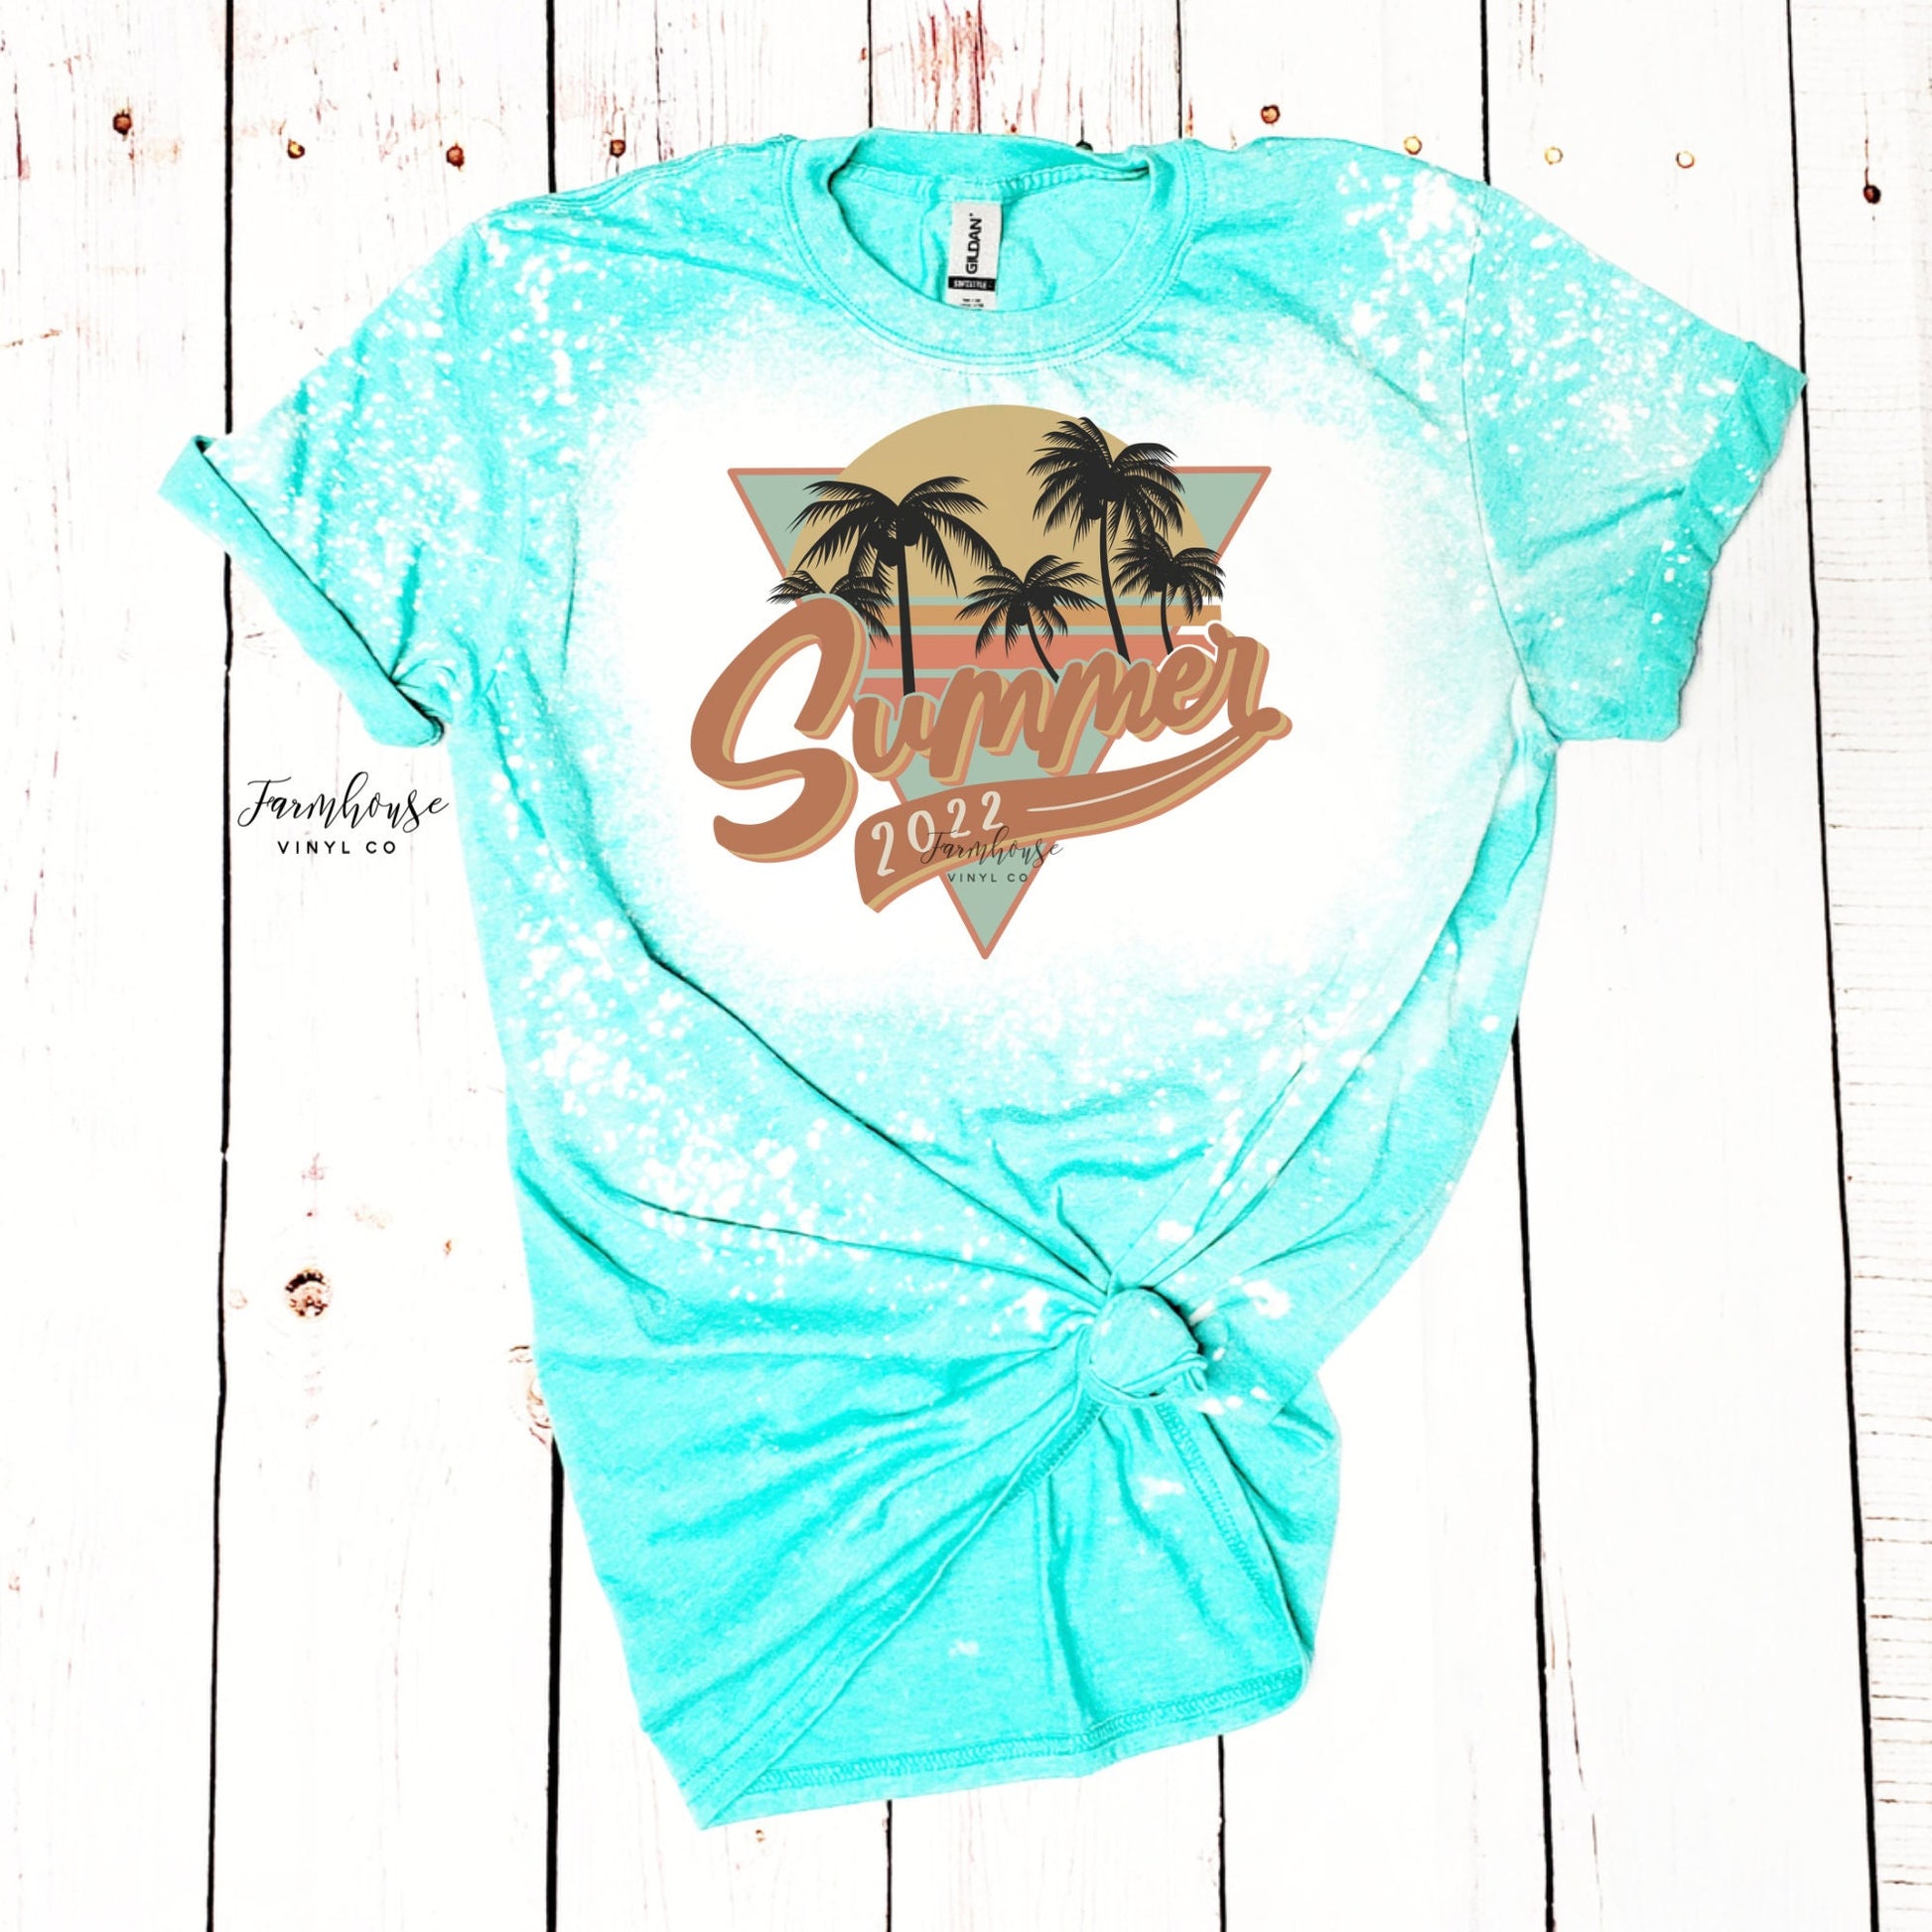 Summer 2022 Checker Shirt / Trendy shirt / Children Summer Tees / Beach Trip Shirts Match / Surfing Shirt / Summer Matching Shirts - Farmhouse Vinyl Co